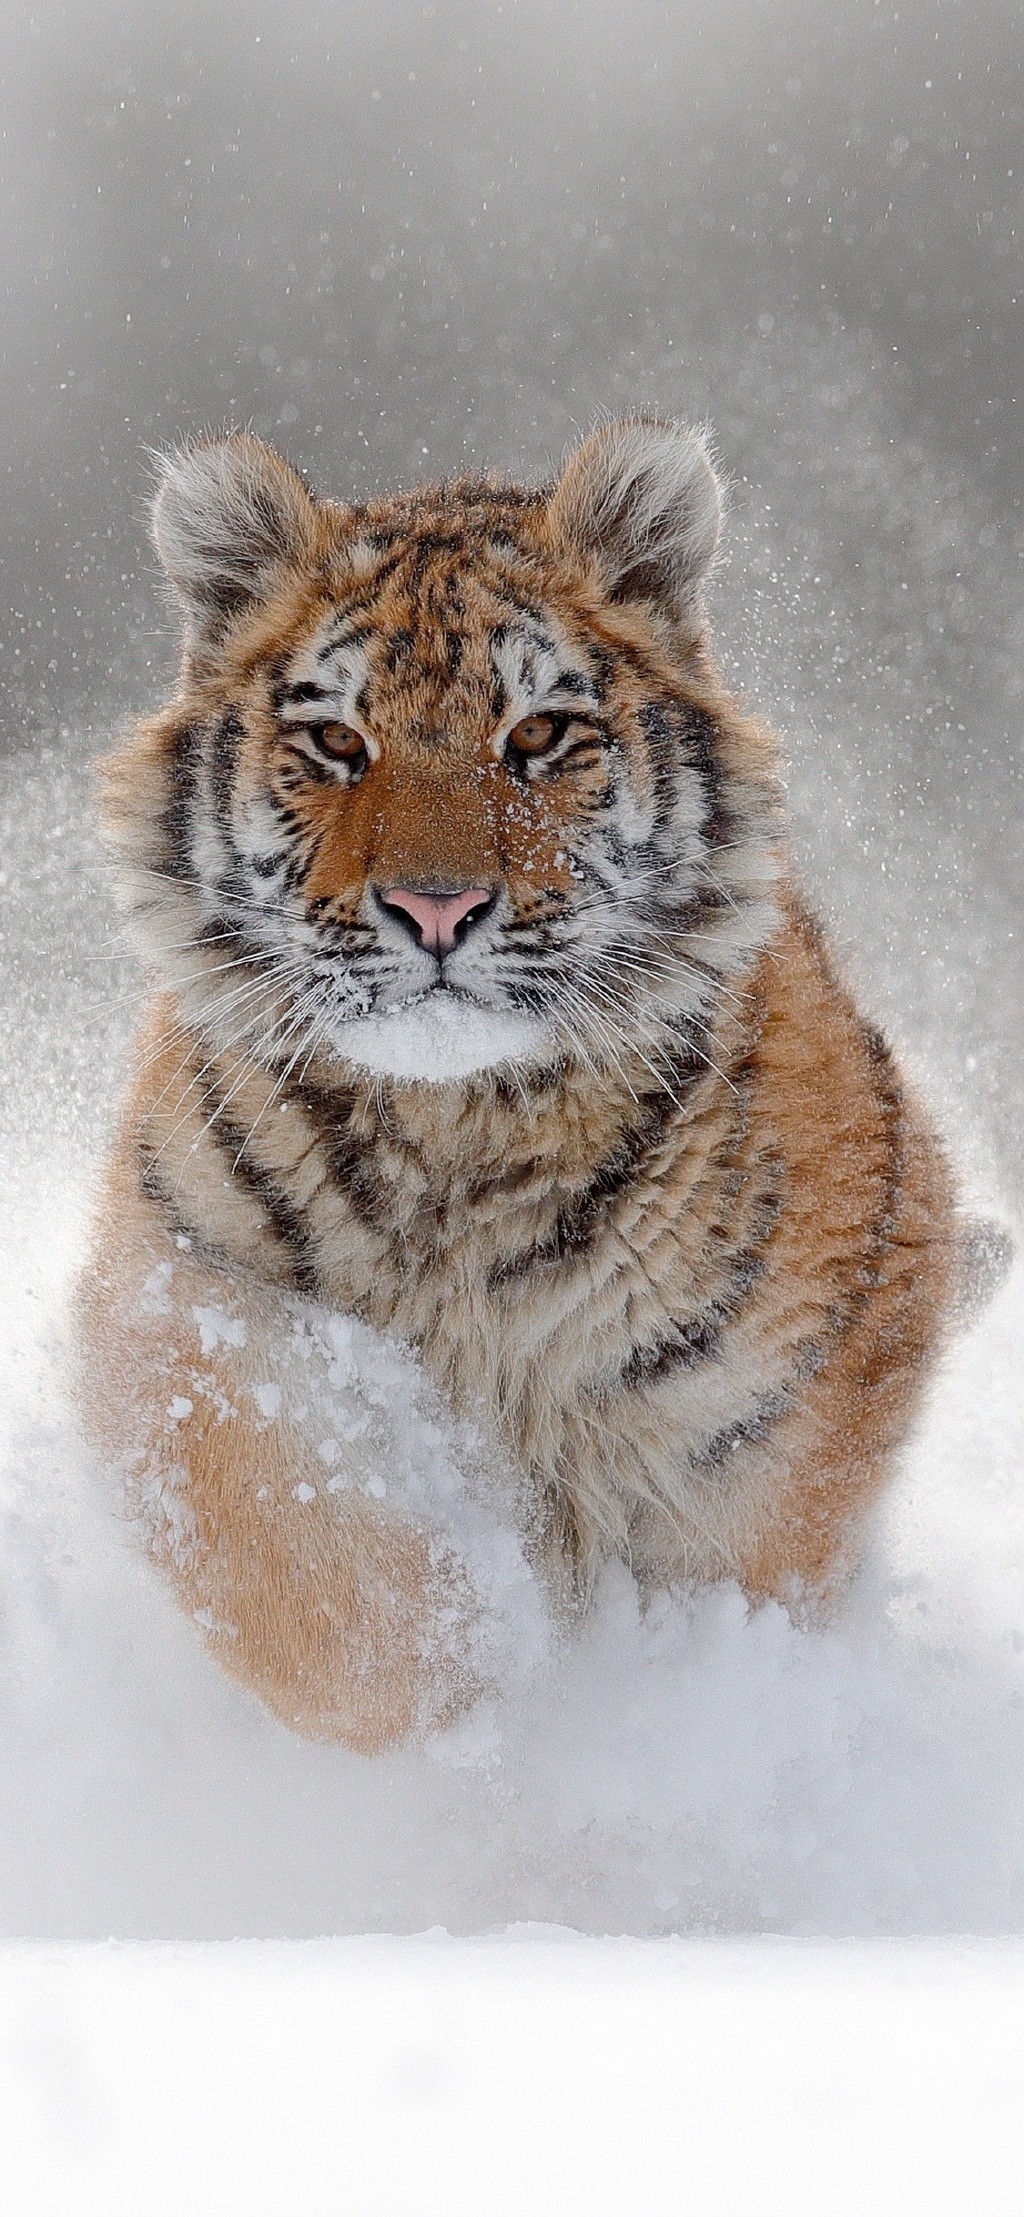 雪地上呆萌的小老虎